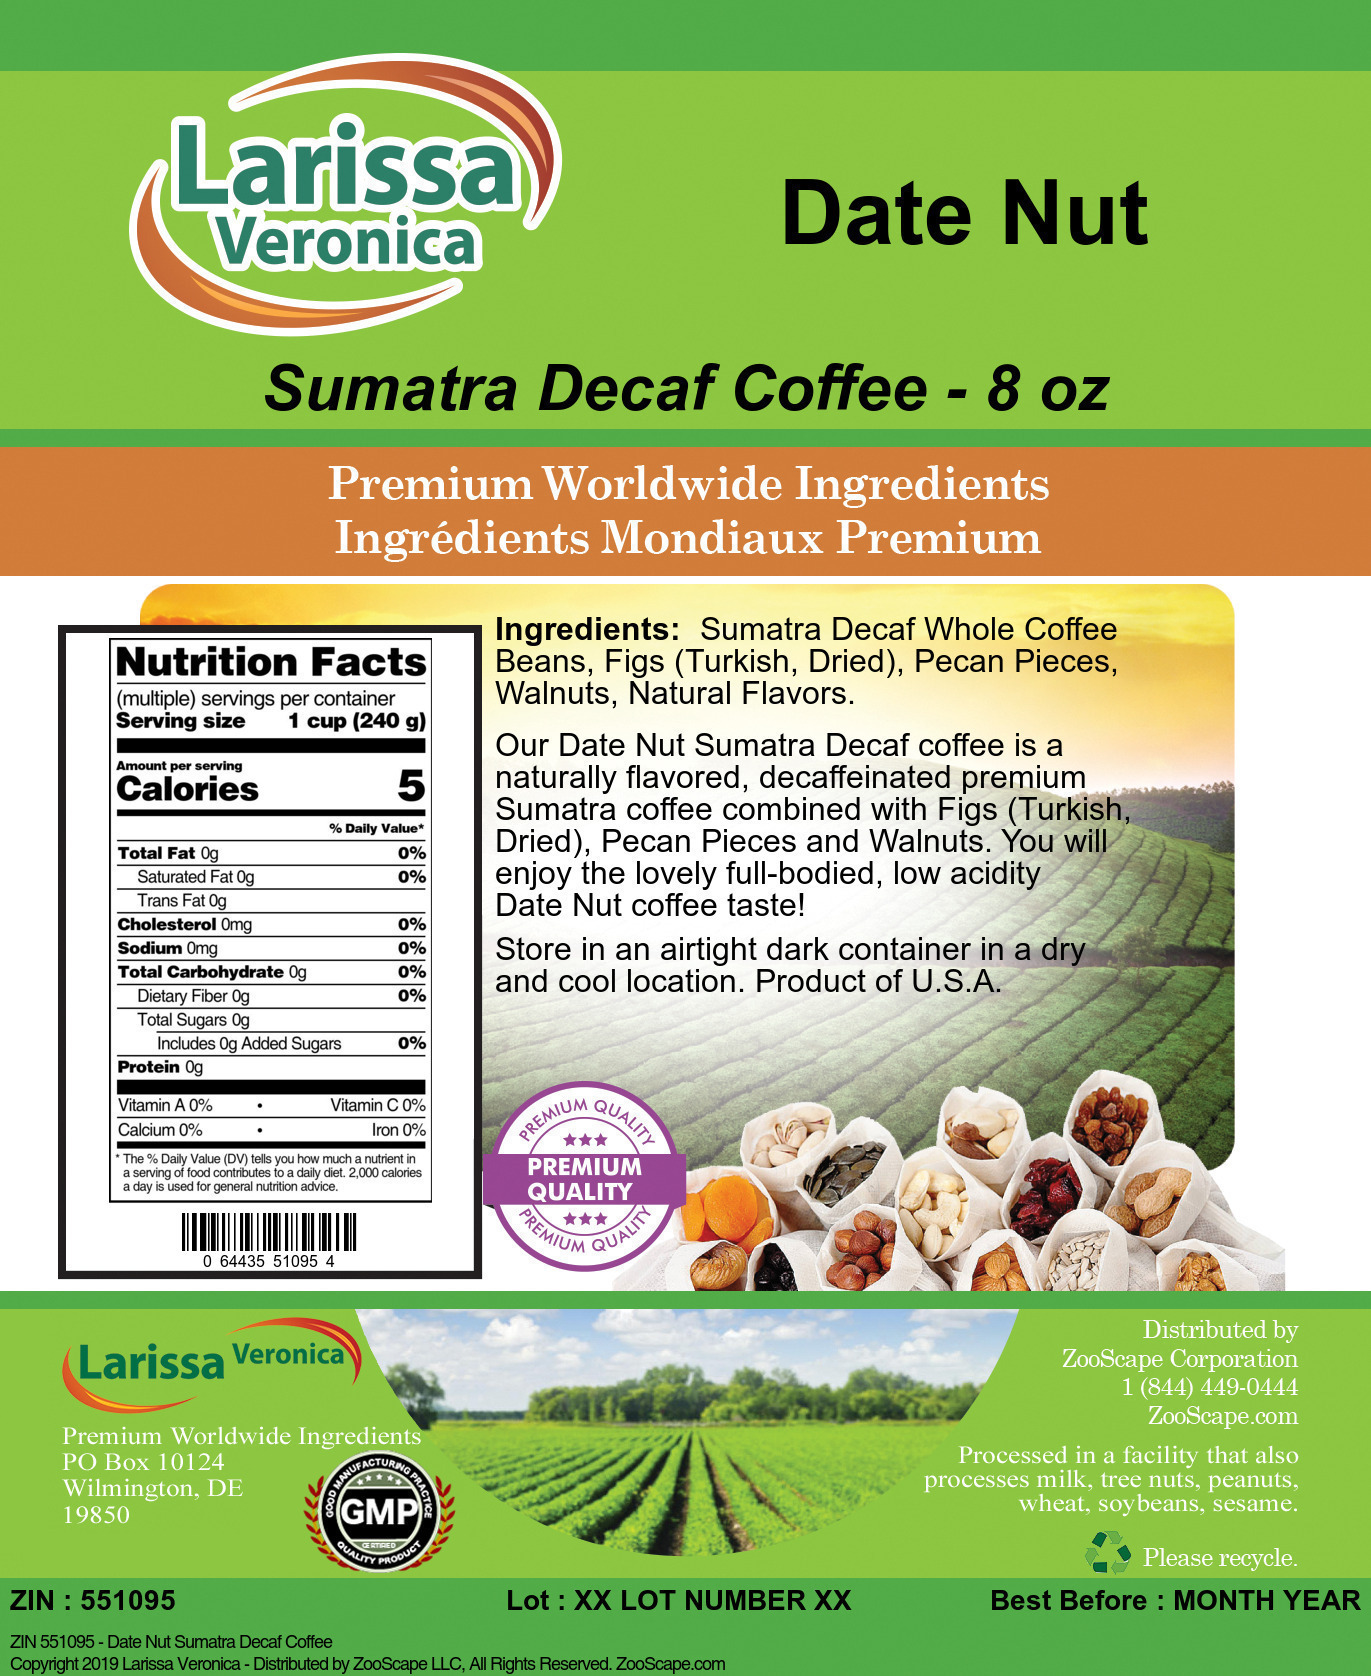 Date Nut Sumatra Decaf Coffee - Label